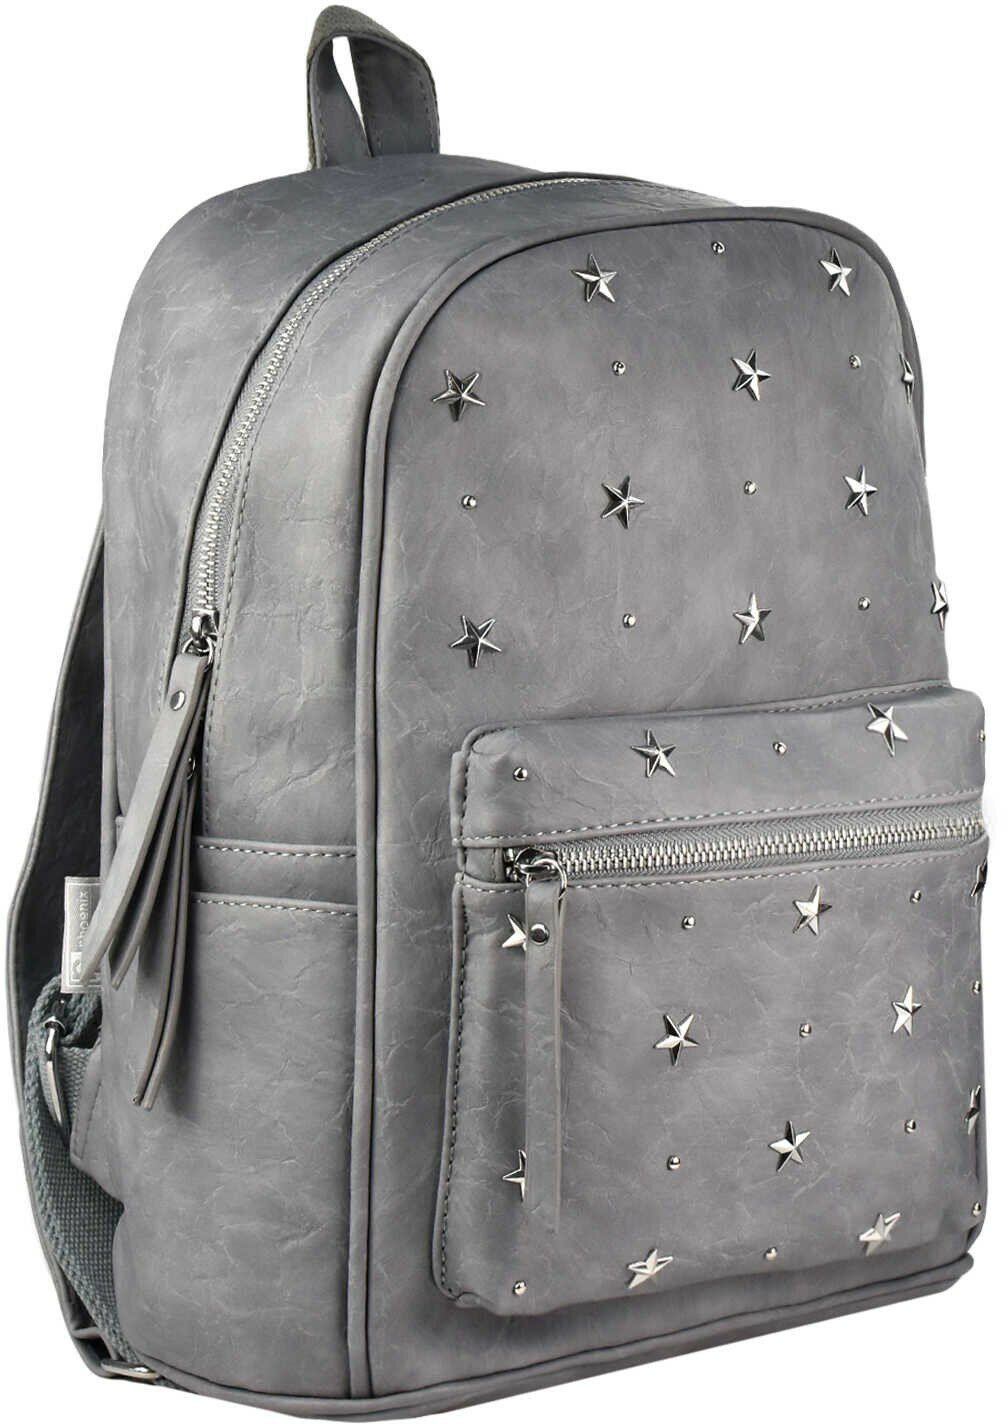 Рюкзак серый С заклёпками звёздами, искуственная кожа (48361)